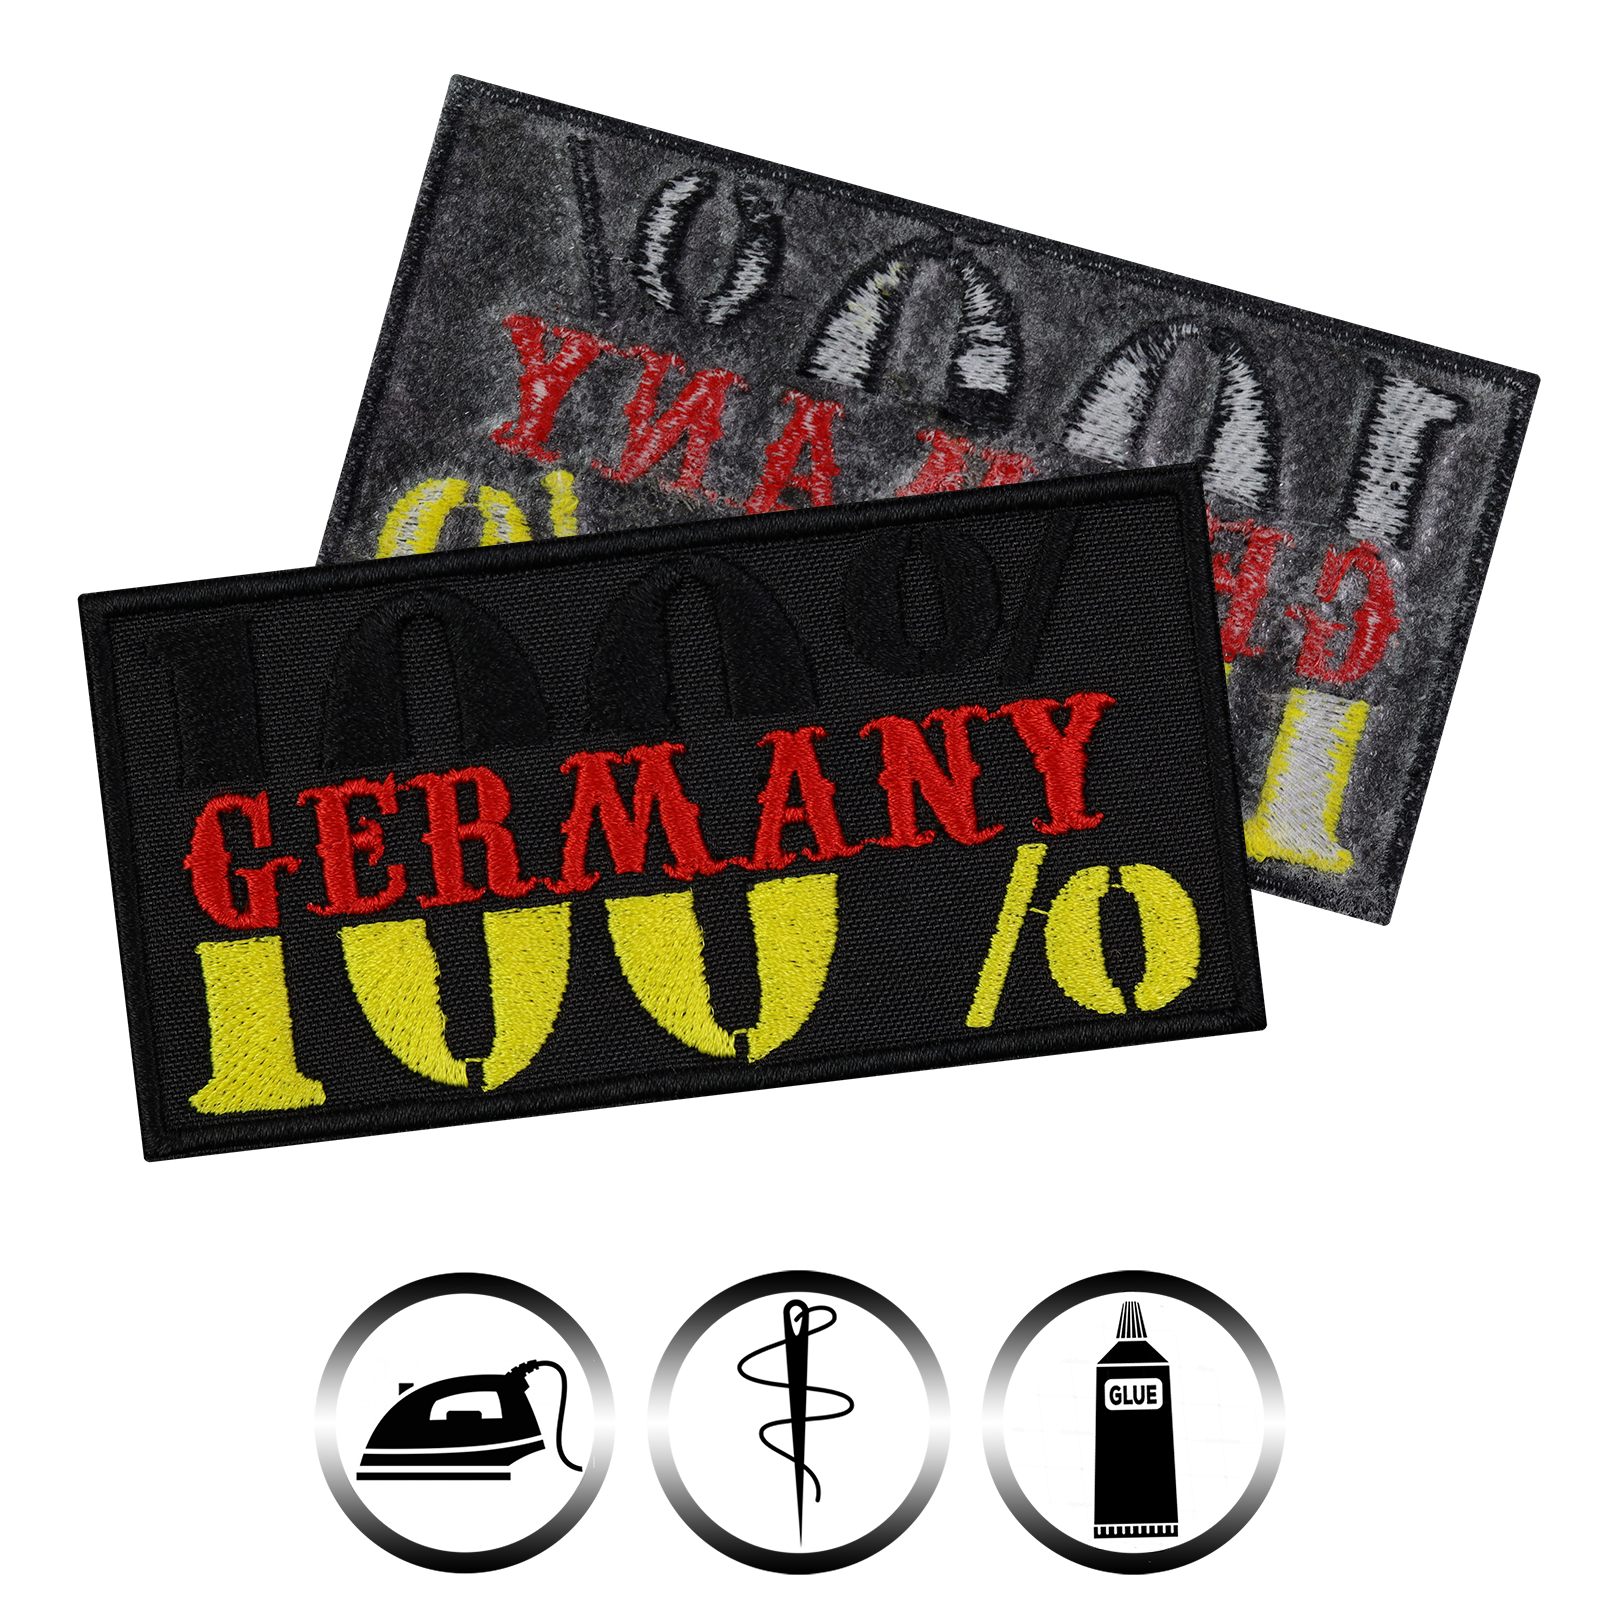 100% Germany - Patch